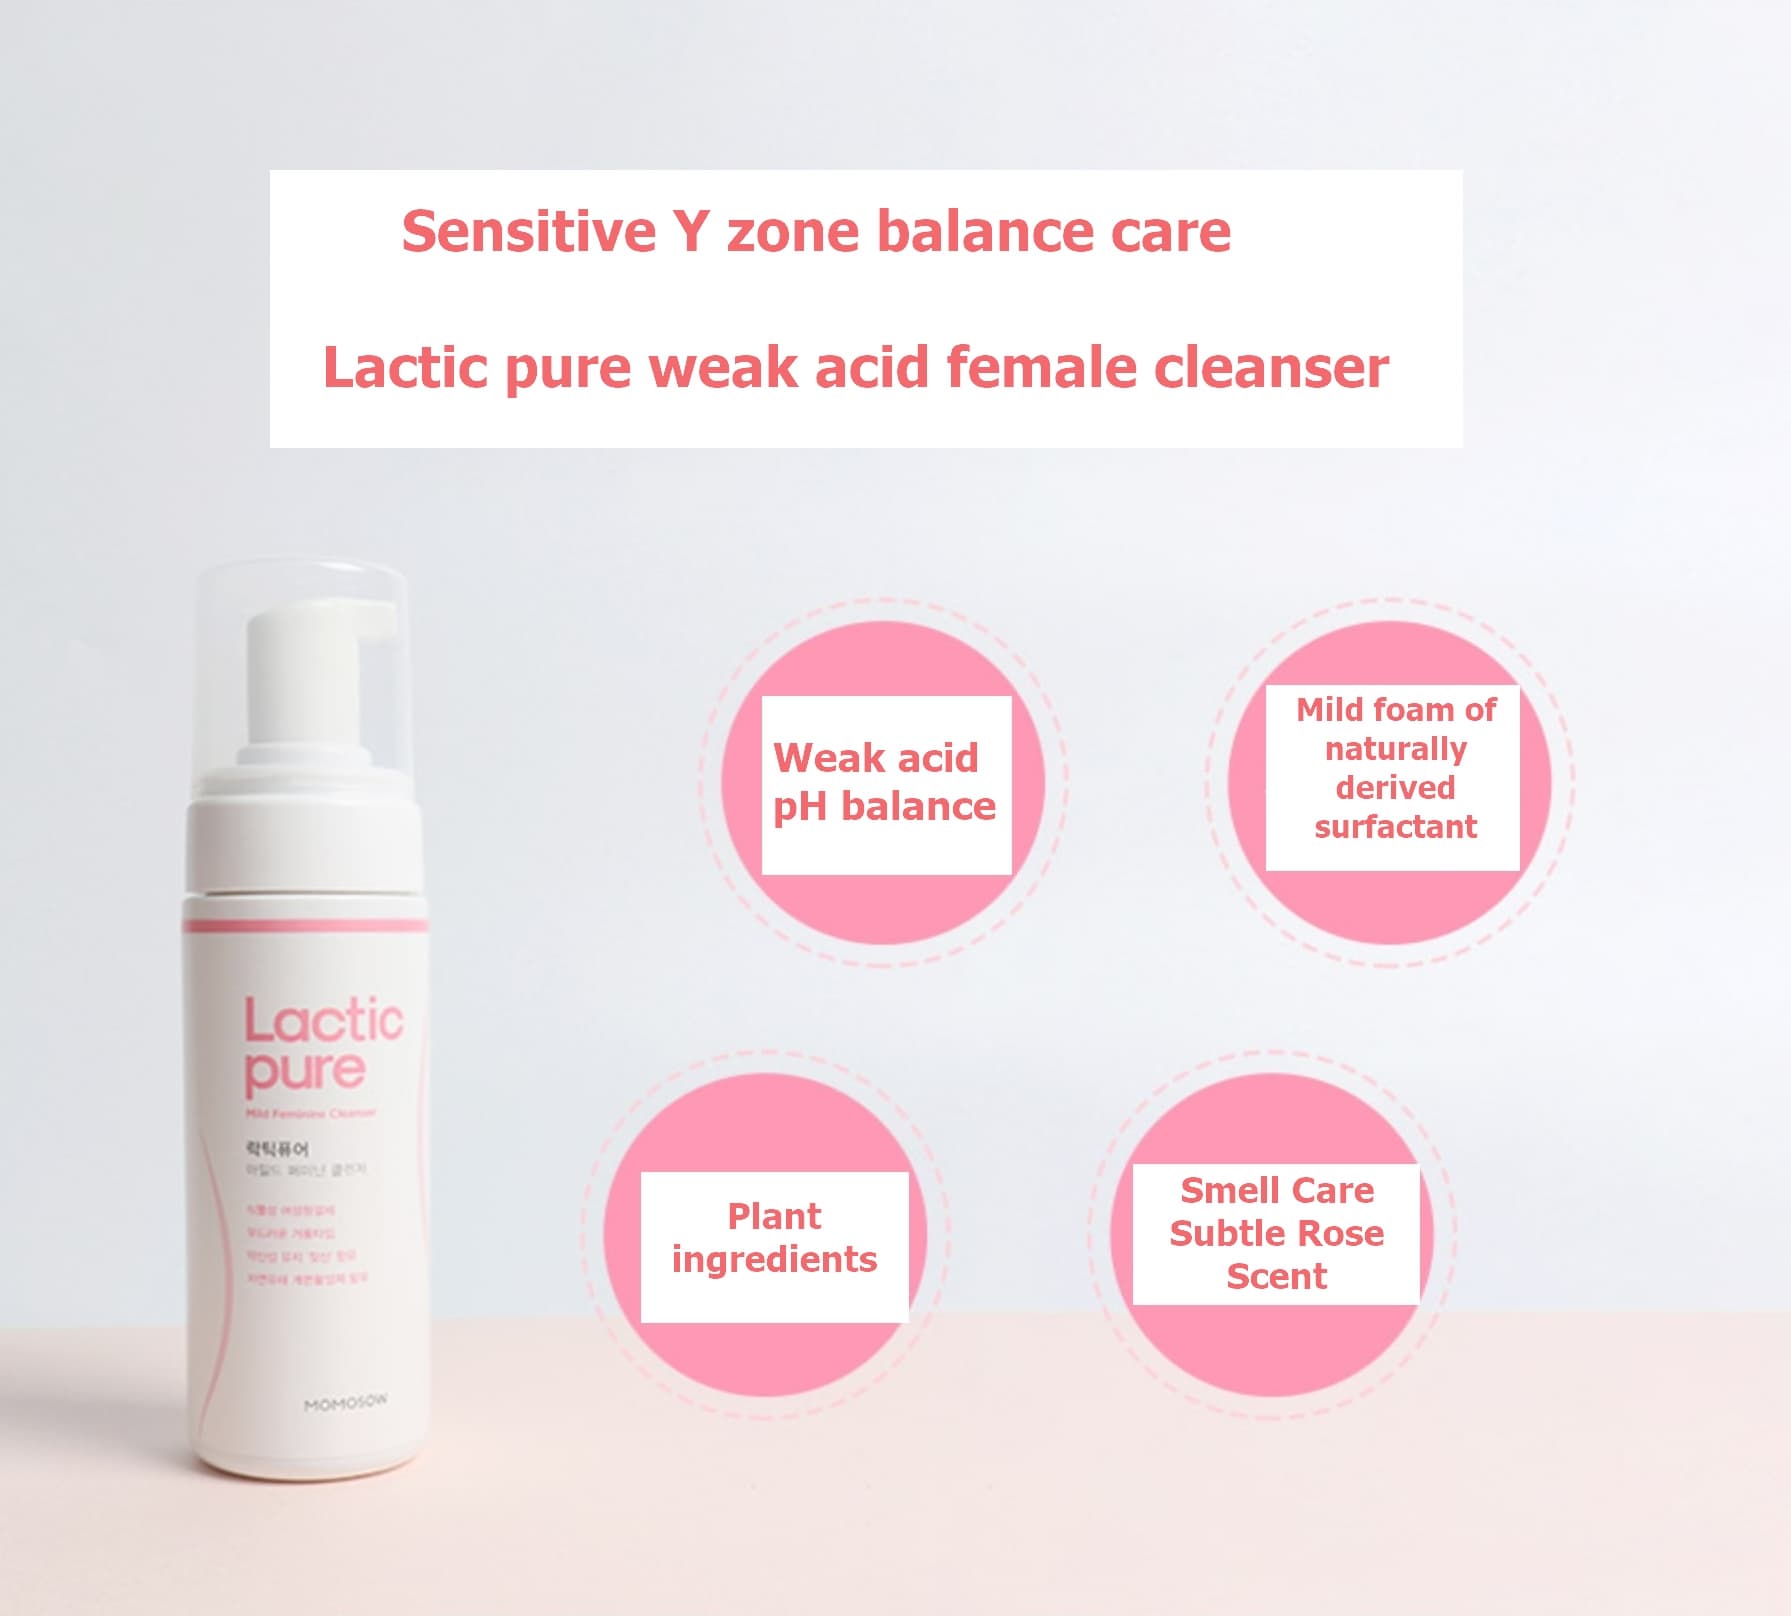 Lactic pure weak acid feminine cleanser